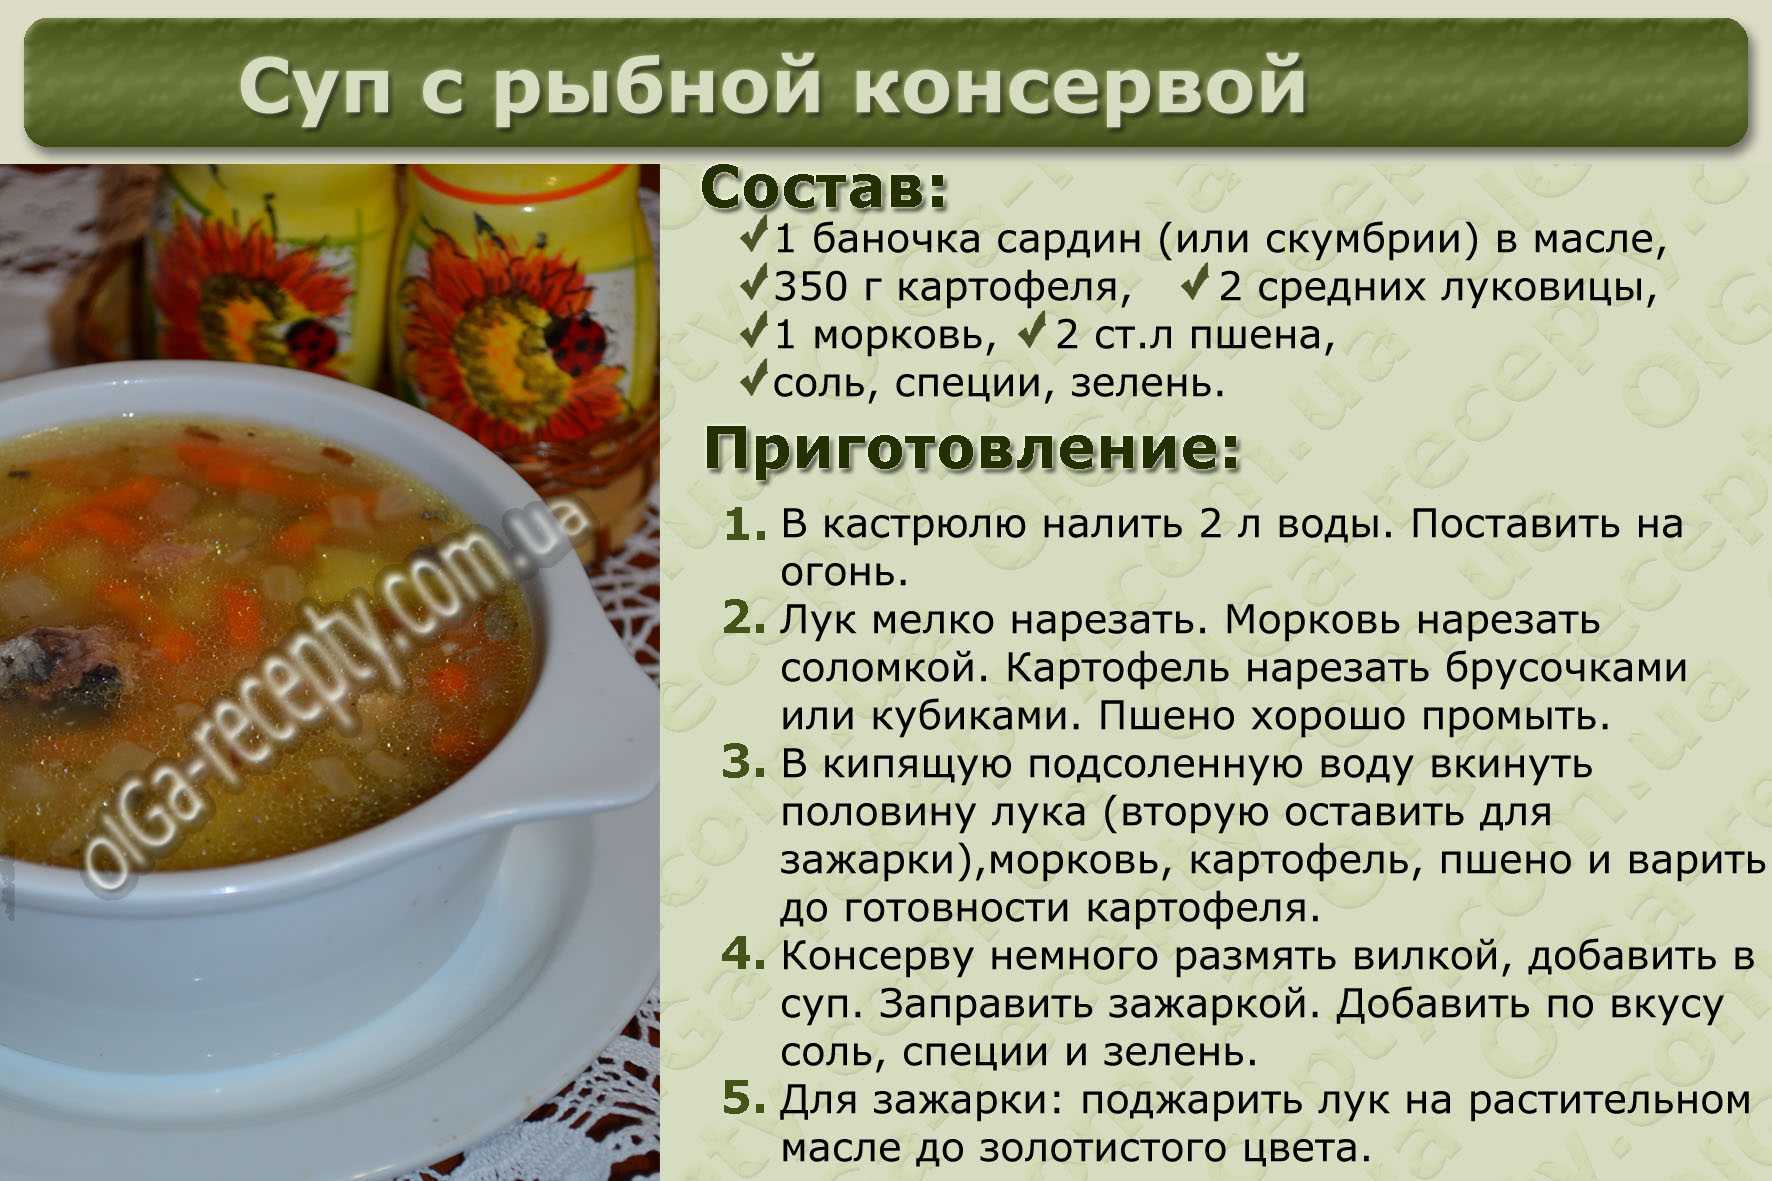 Супы поэтапно. Рецепты супов с описанием. Рецепты супов в картинках. Рецепты супов в картинках с описанием. Рецептура приготовления супа.